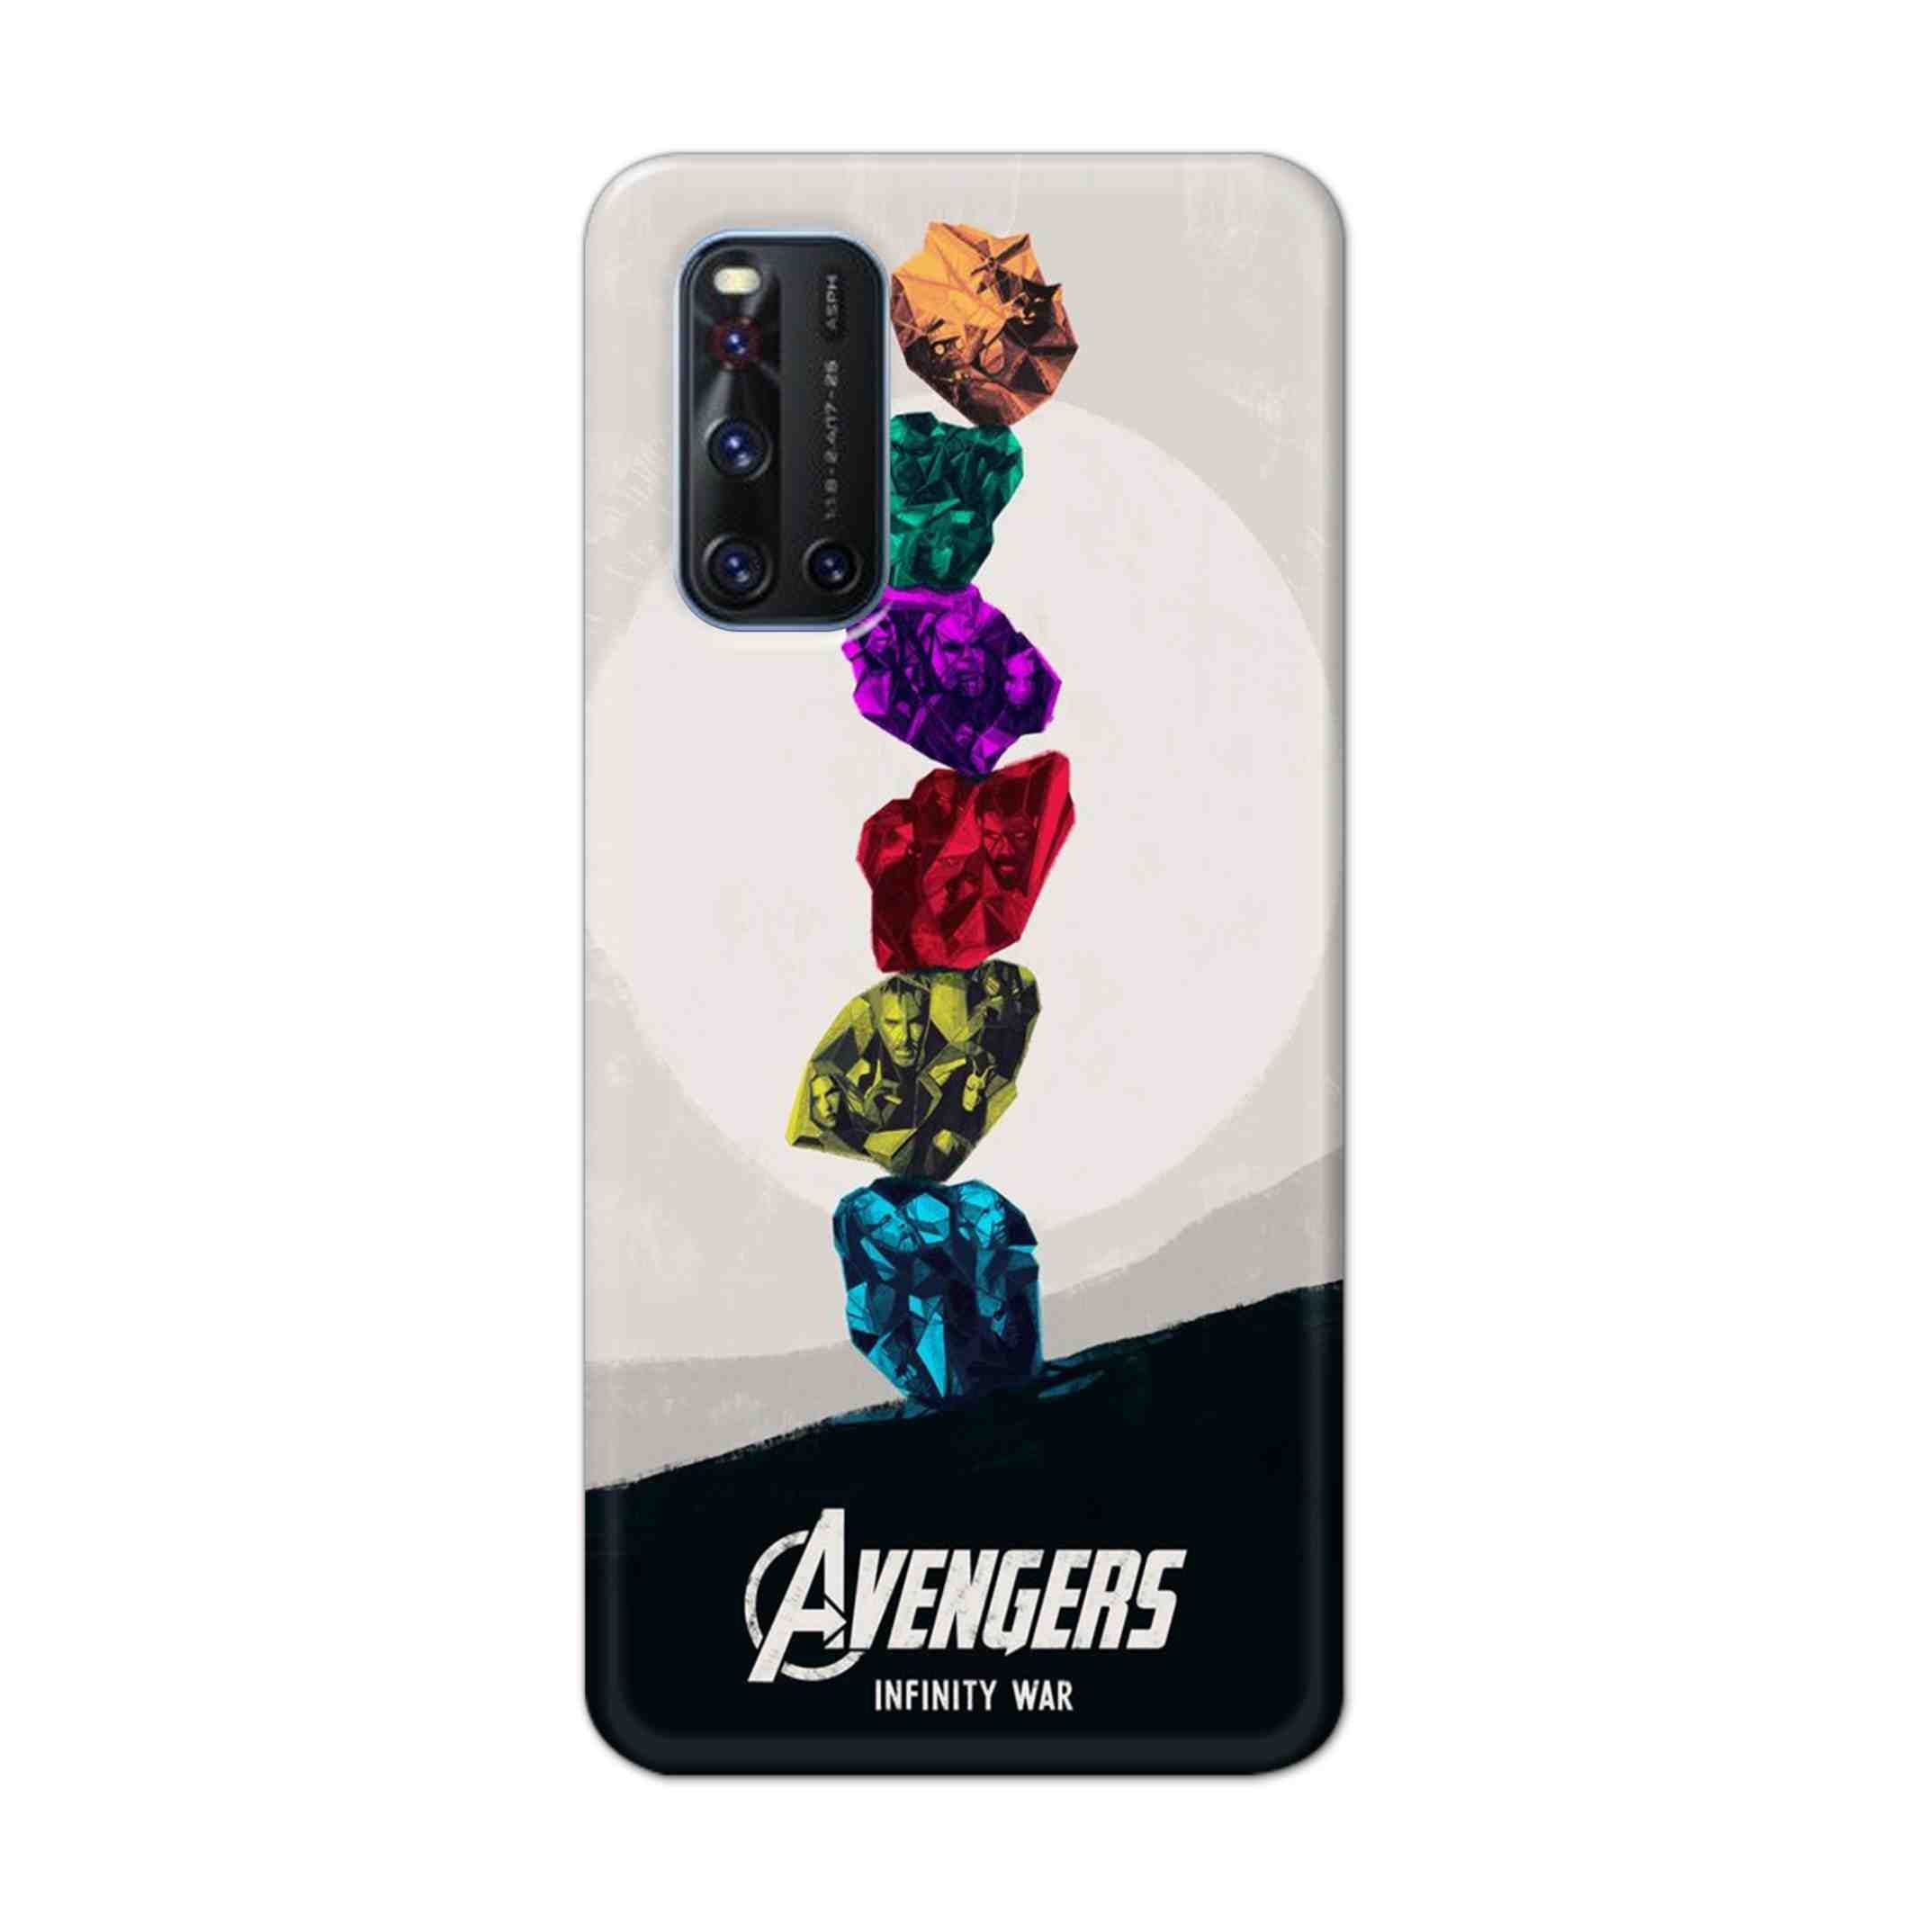 Buy Avengers Stone Hard Back Mobile Phone Case Cover For VivoV19 Online